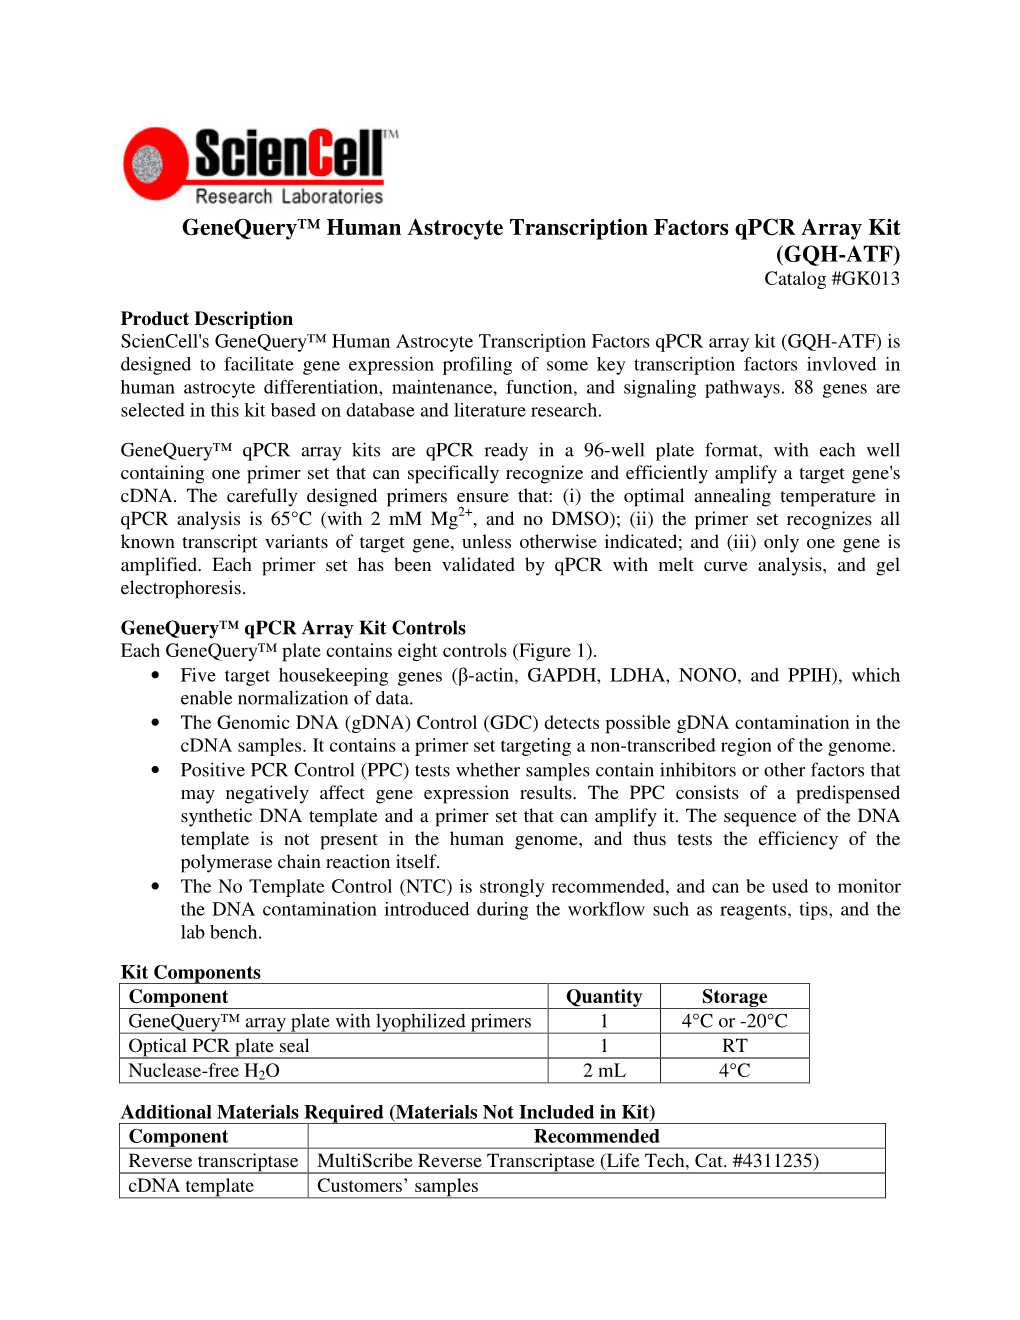 Genequery™ Human Astrocyte Transcription Factors Qpcr Array